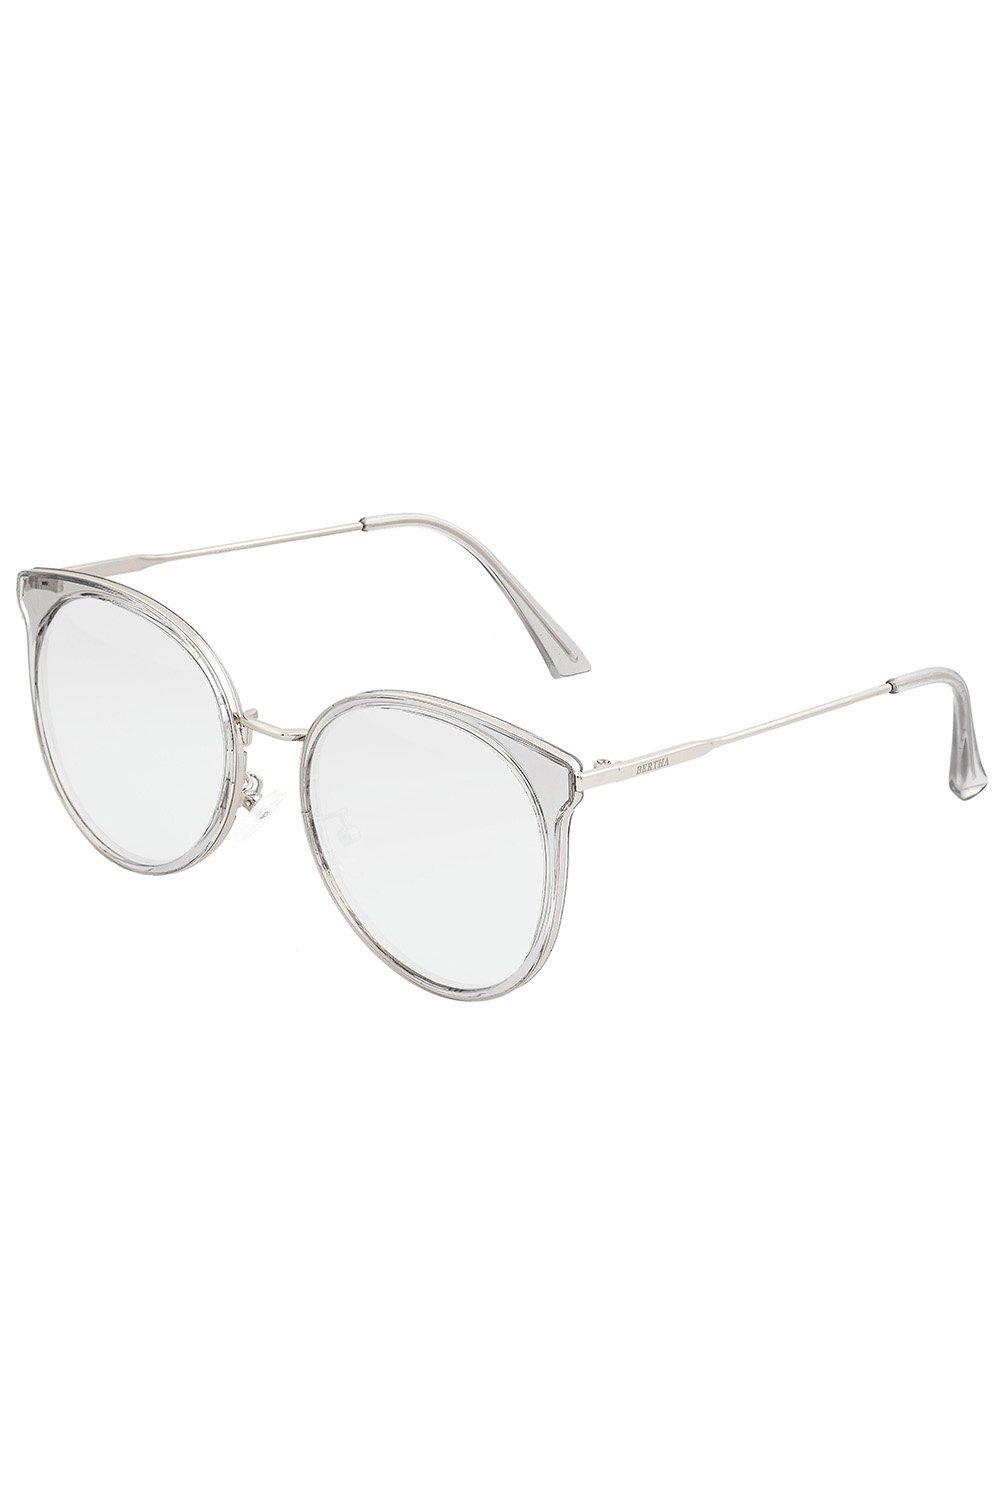 Поляризованные солнцезащитные очки Brielle Bertha, прозрачный